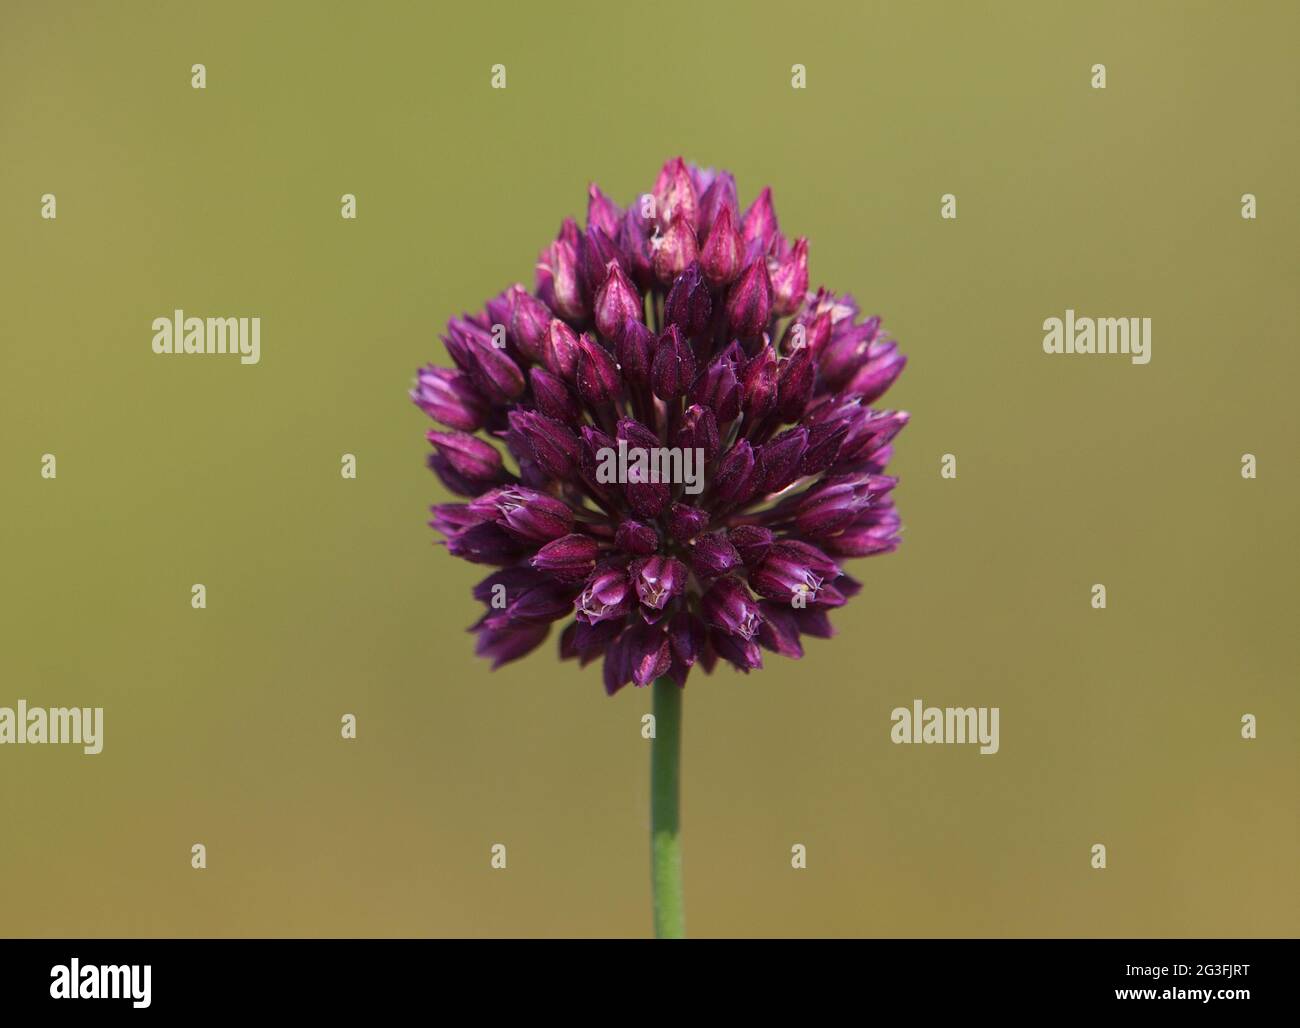 Round-headed leek or purple flowered garlic, Allium rotundum Stock Photo